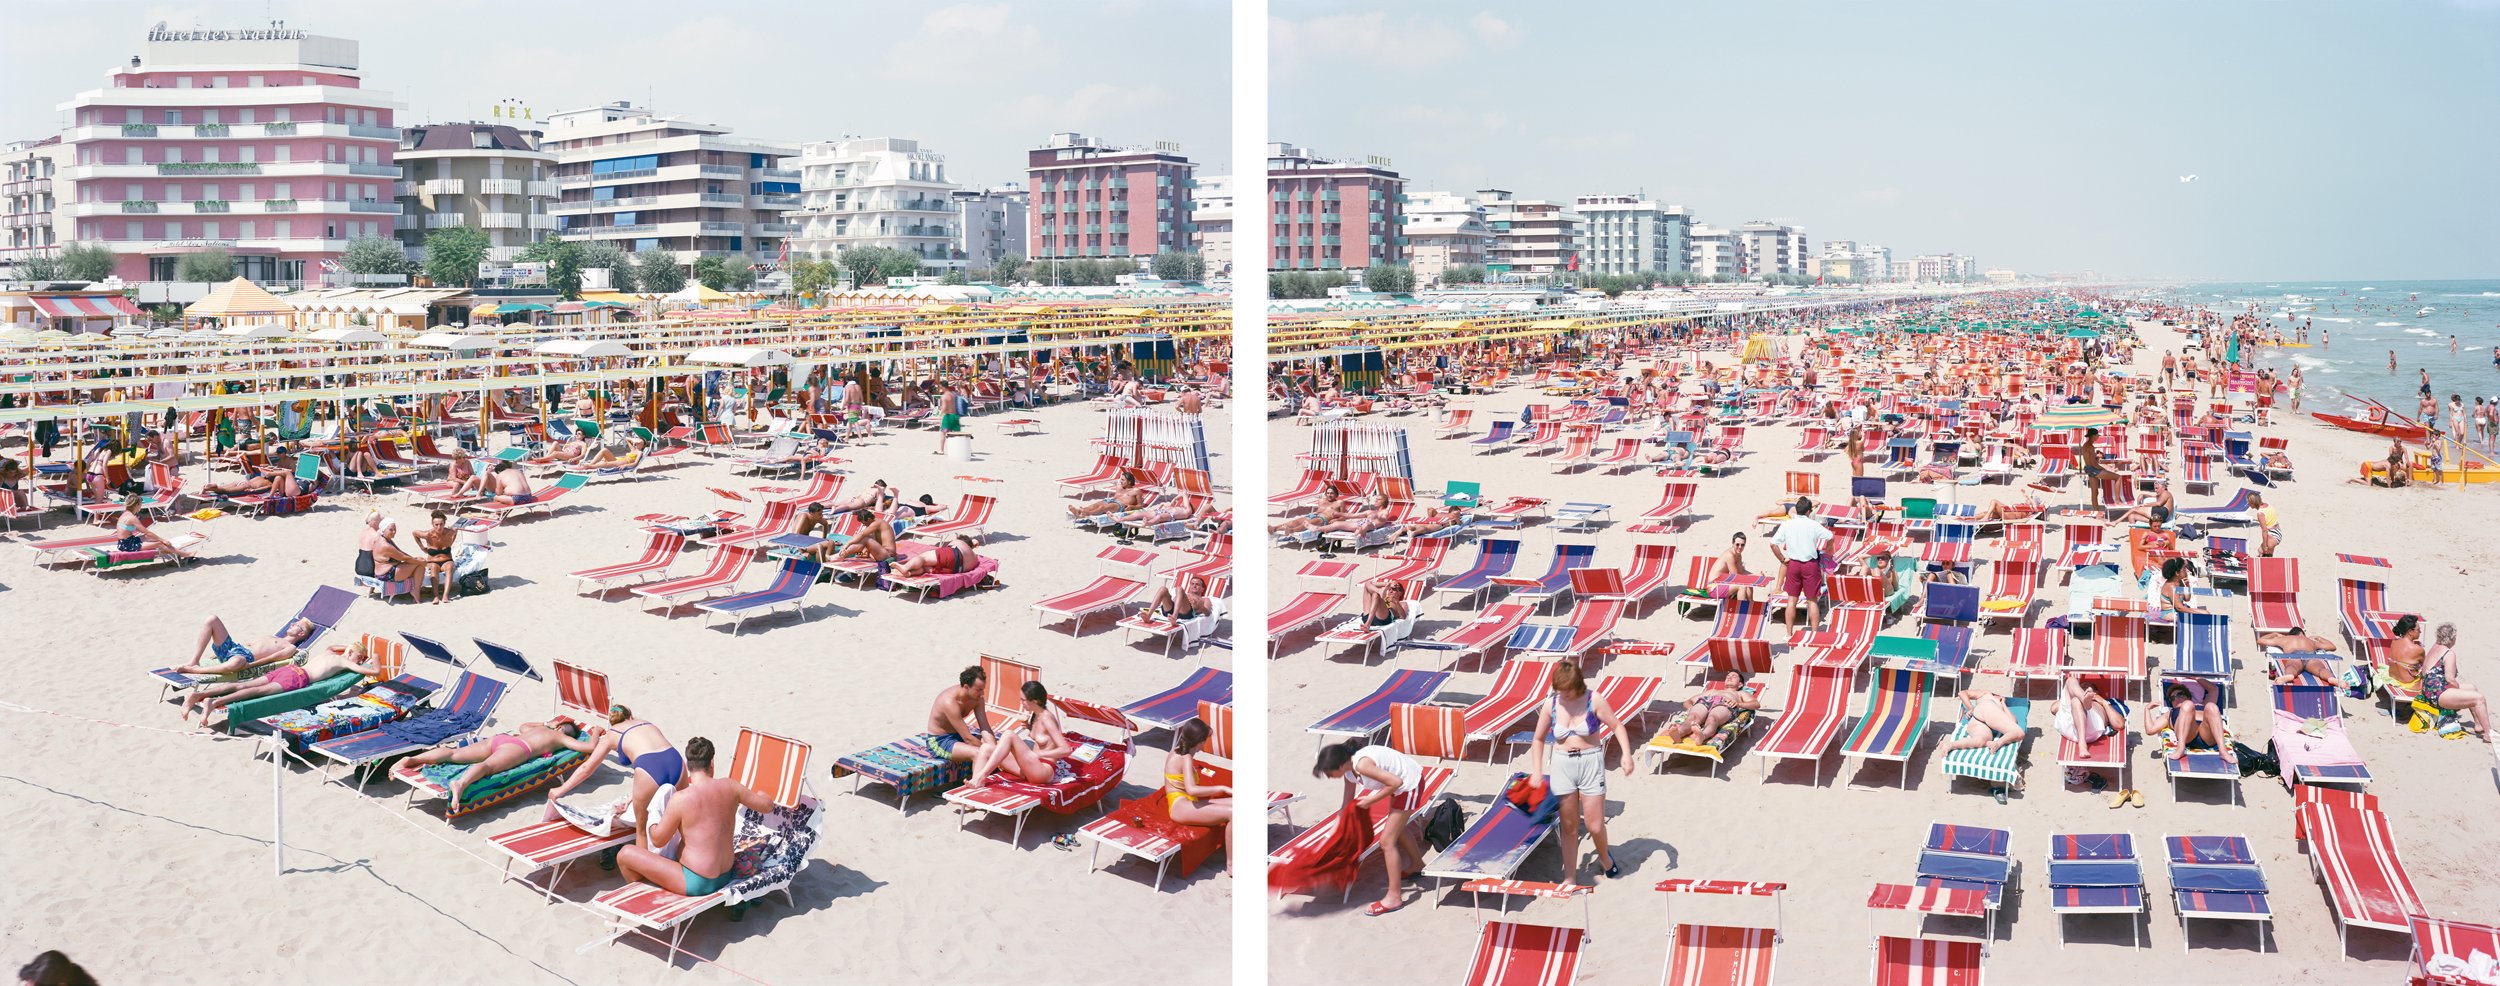 Les plages de Massimo Vitali